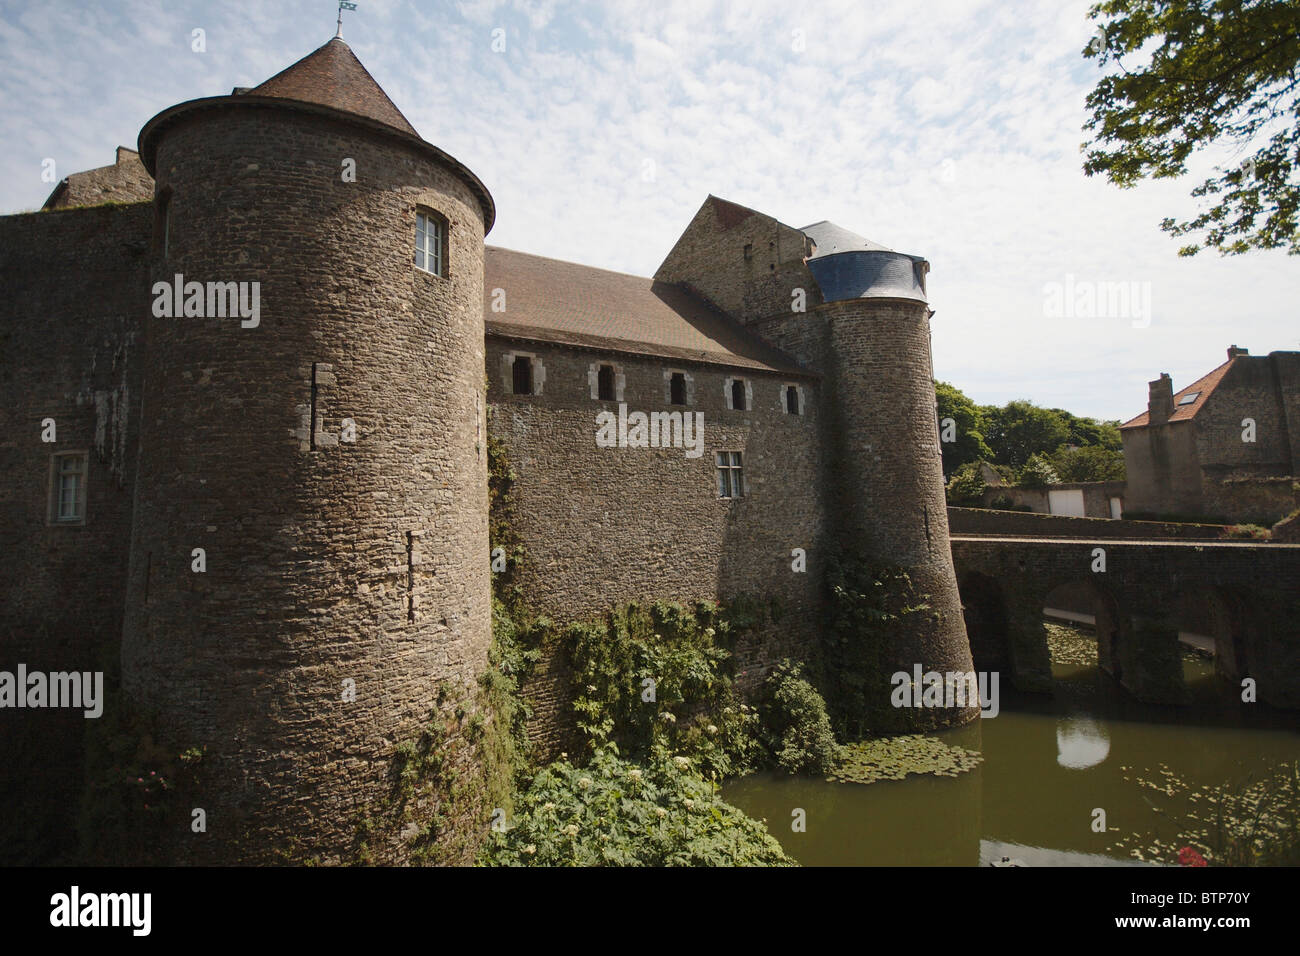 France, Nord Pas de Calais, le château musée de Boulogne-sur-Mer, vue du château Banque D'Images